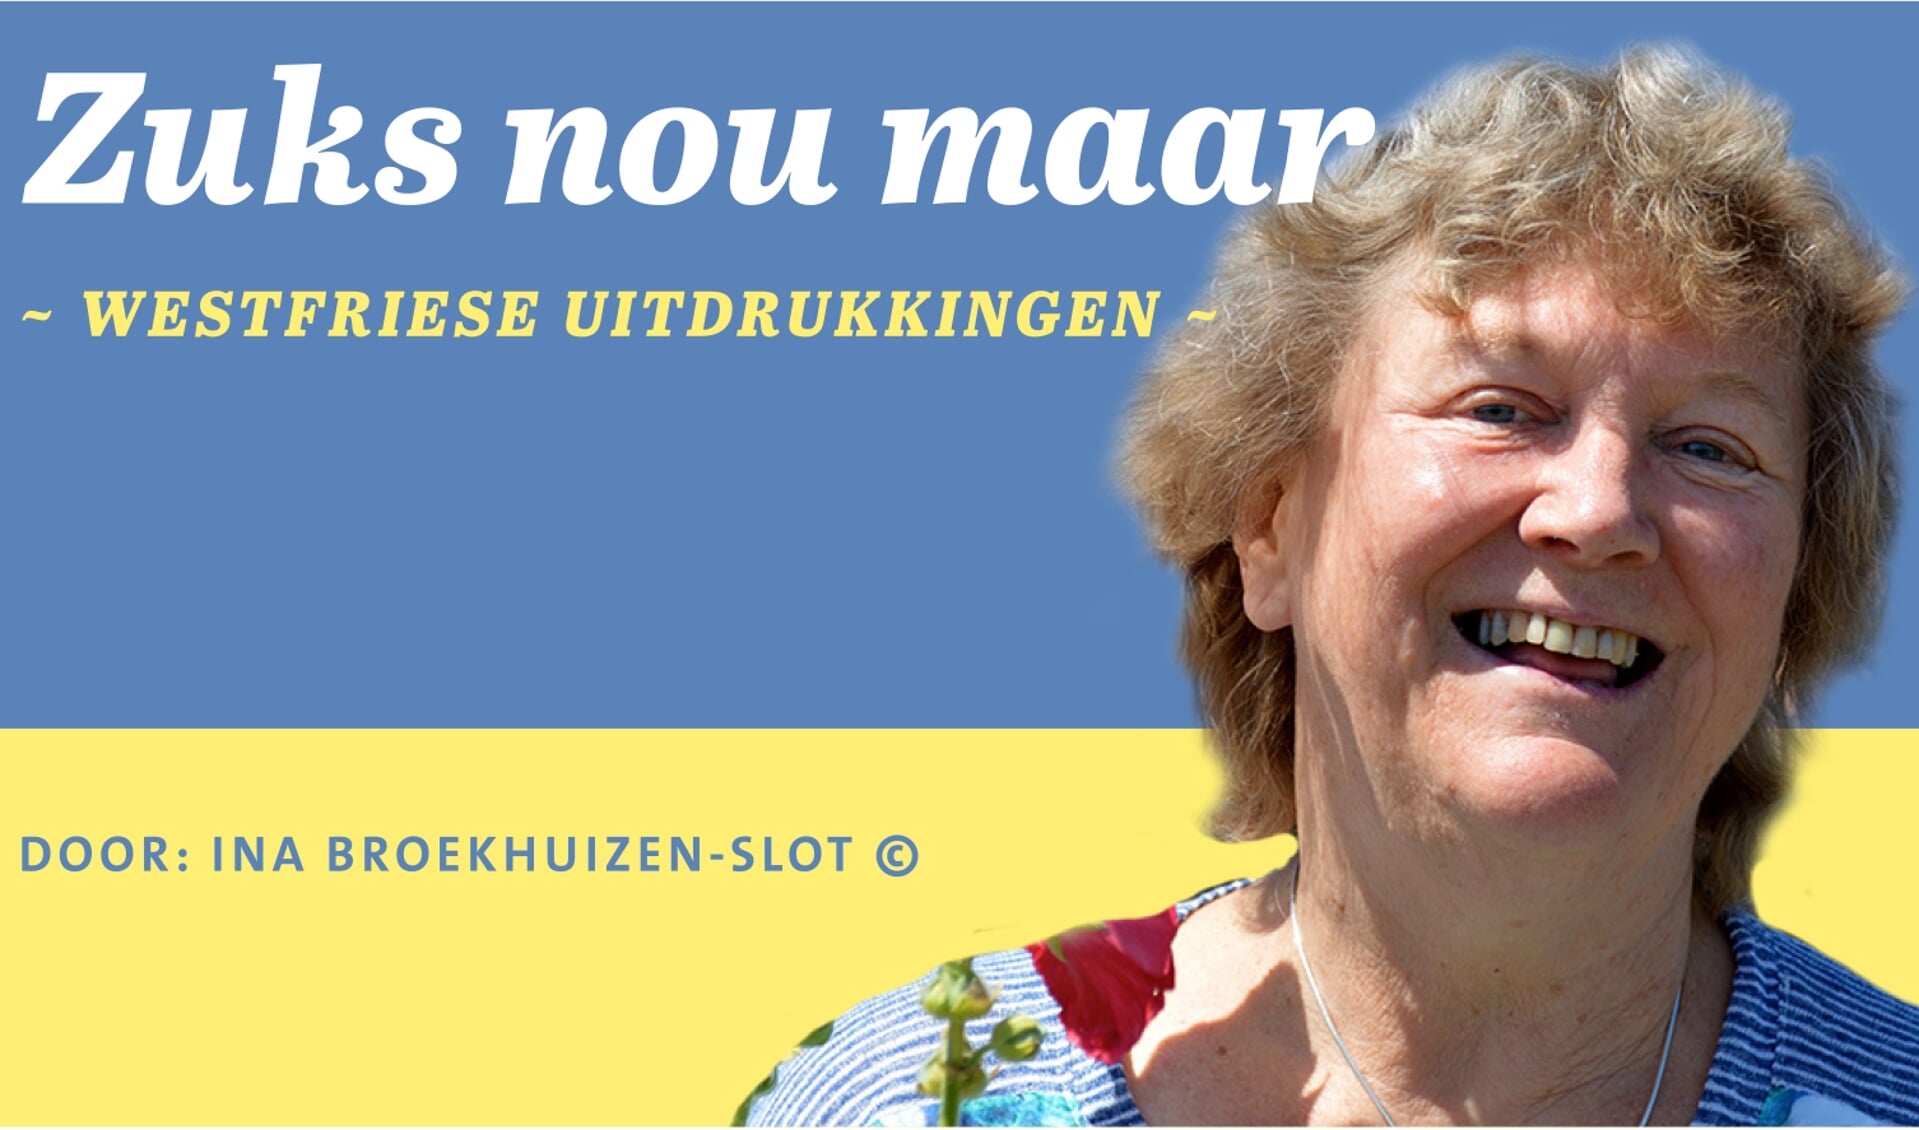 Ina Broekhuizen-Slot is deskundige Westfriese uitdrukkingen.